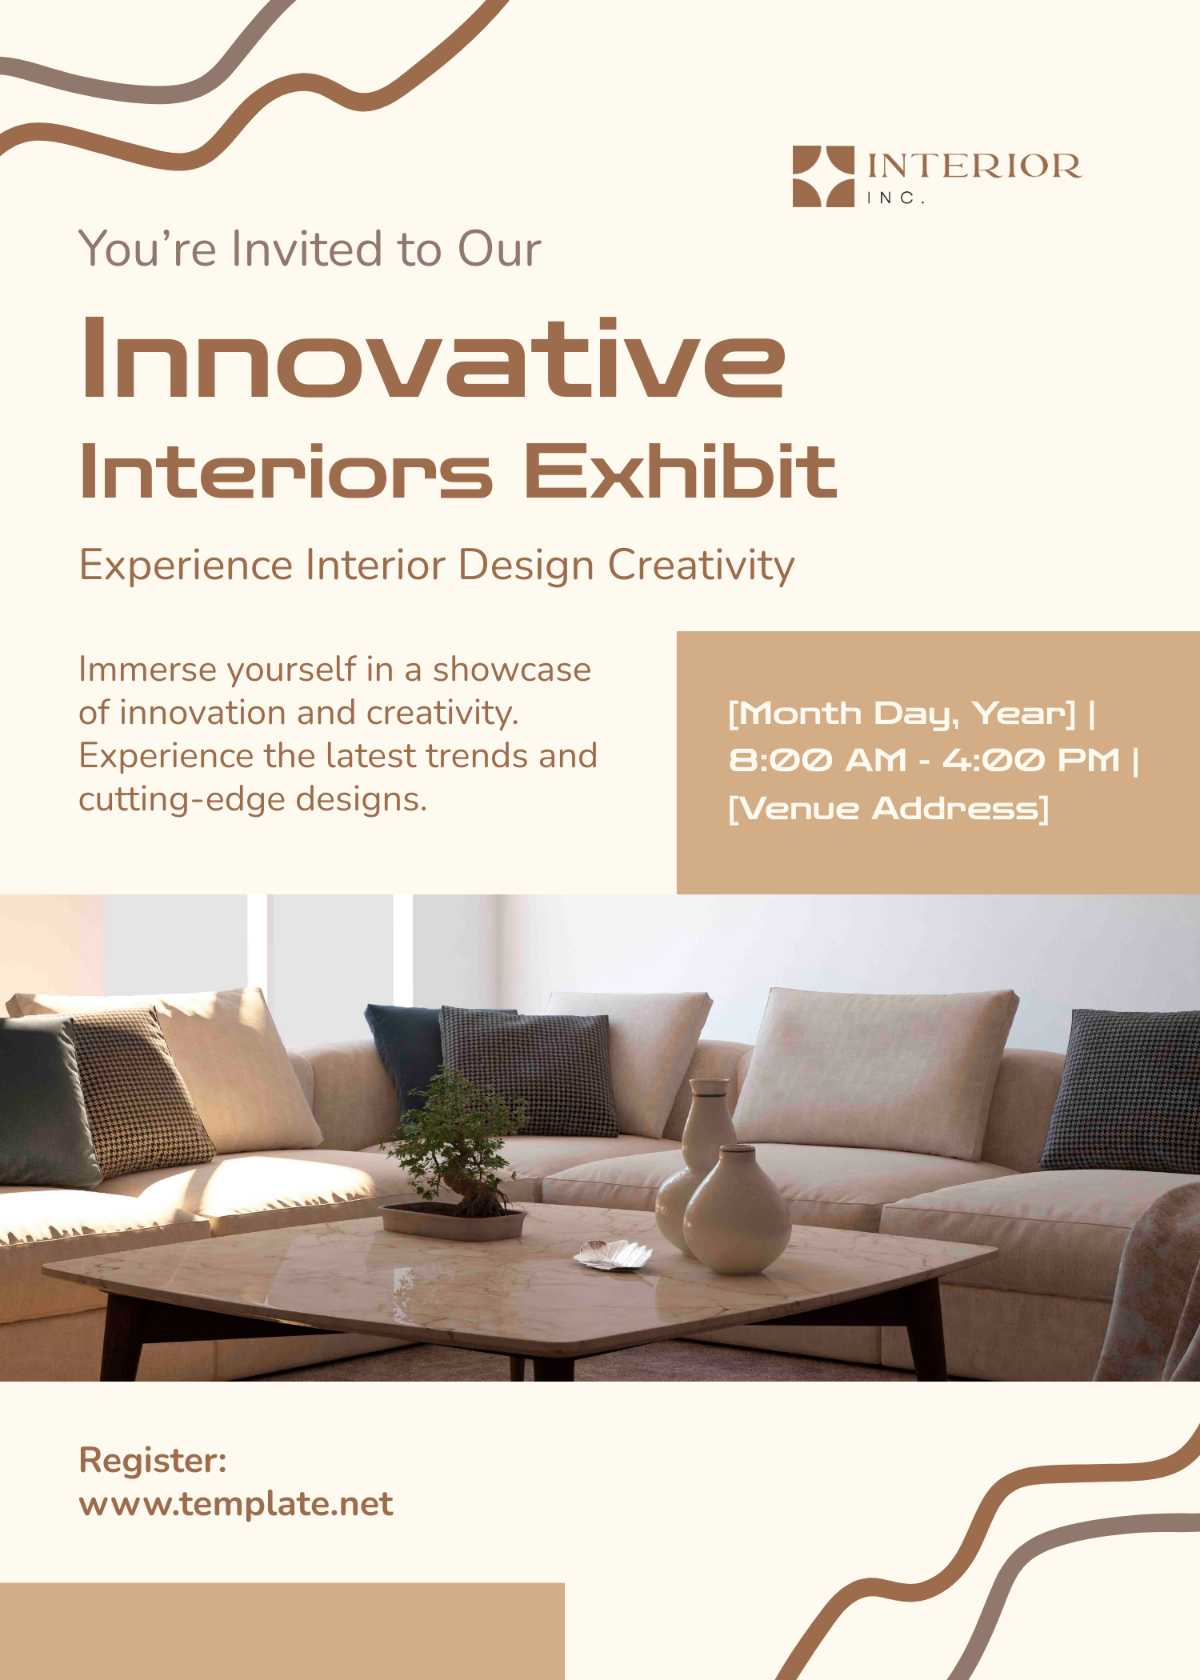 Interior Design Exhibition Invitation